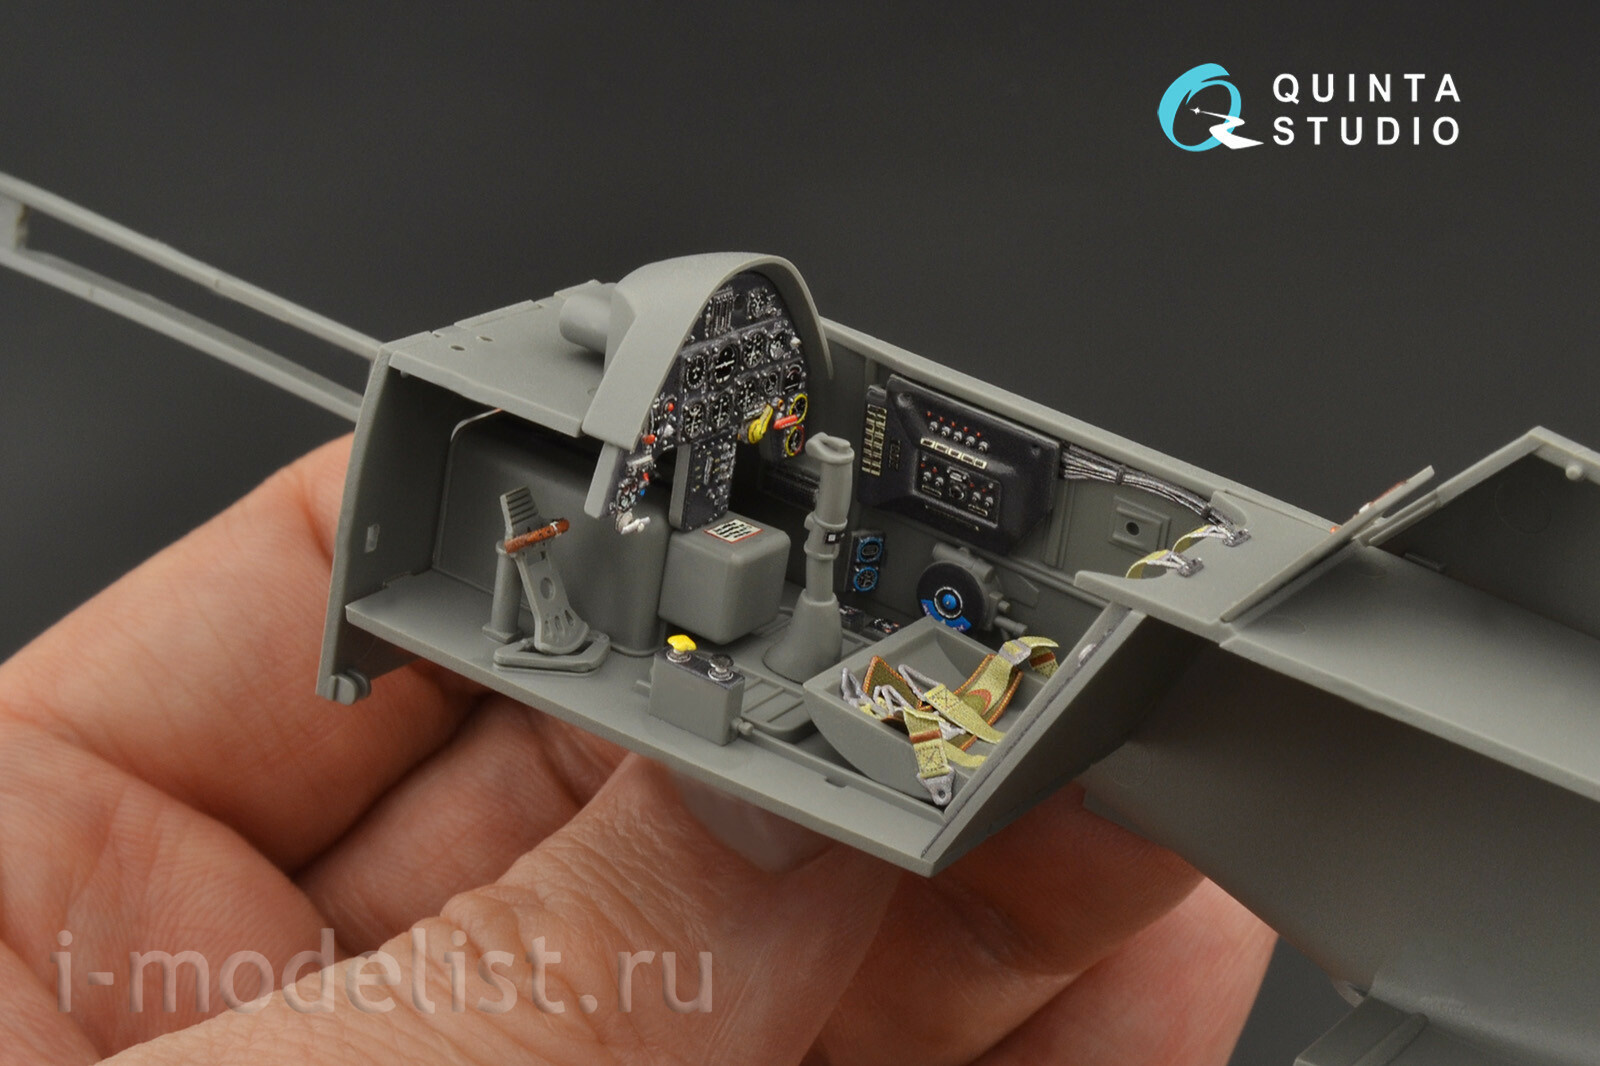 QD35041 Quinta Studio 1/35 3D Декаль интерьера кабины Bf 109G-6 (для модели Border Model)